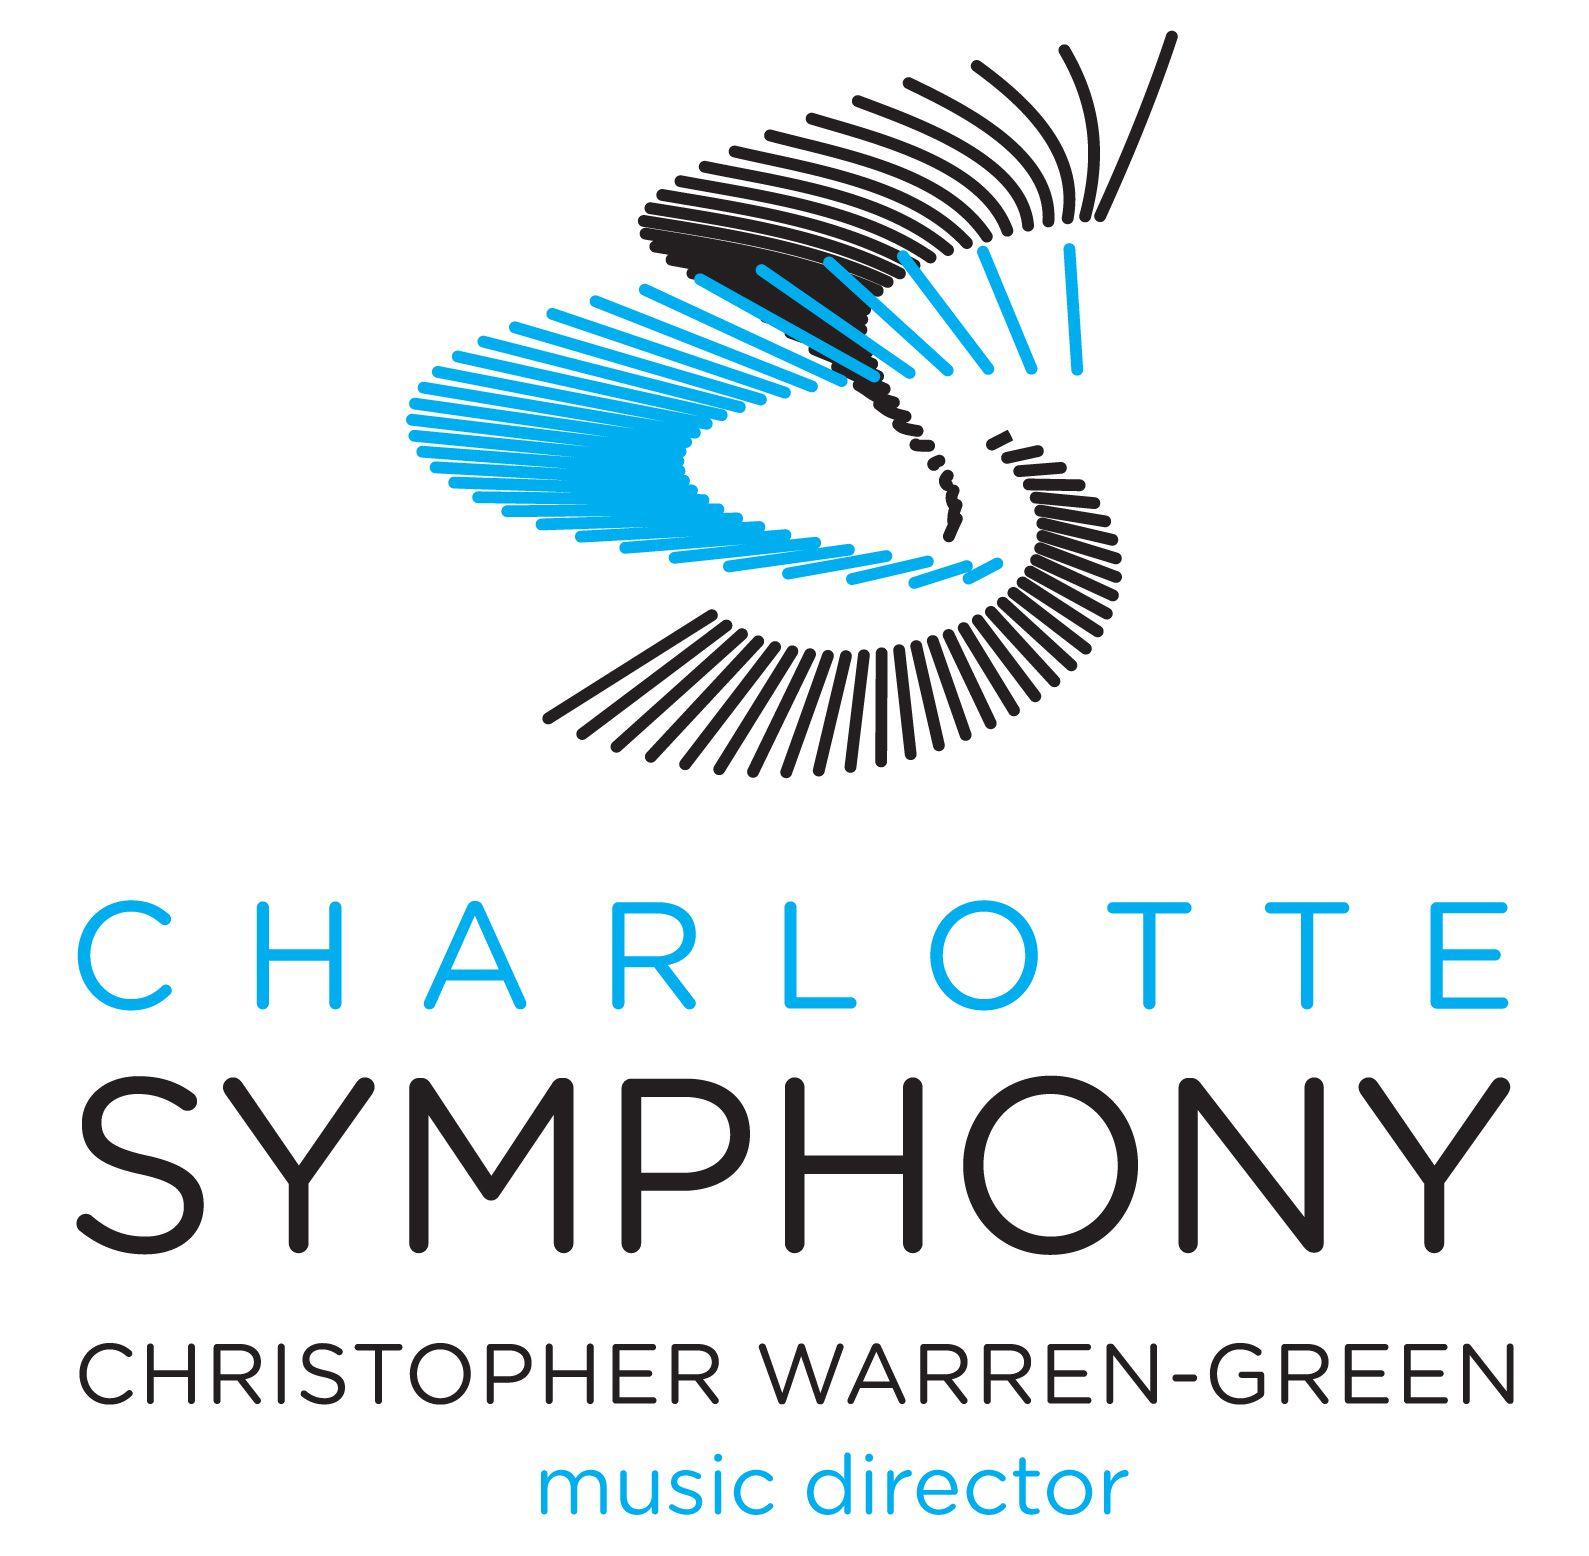 Symphony Logo - High Quality Image Archive | Charlotte Symphony Orchestra